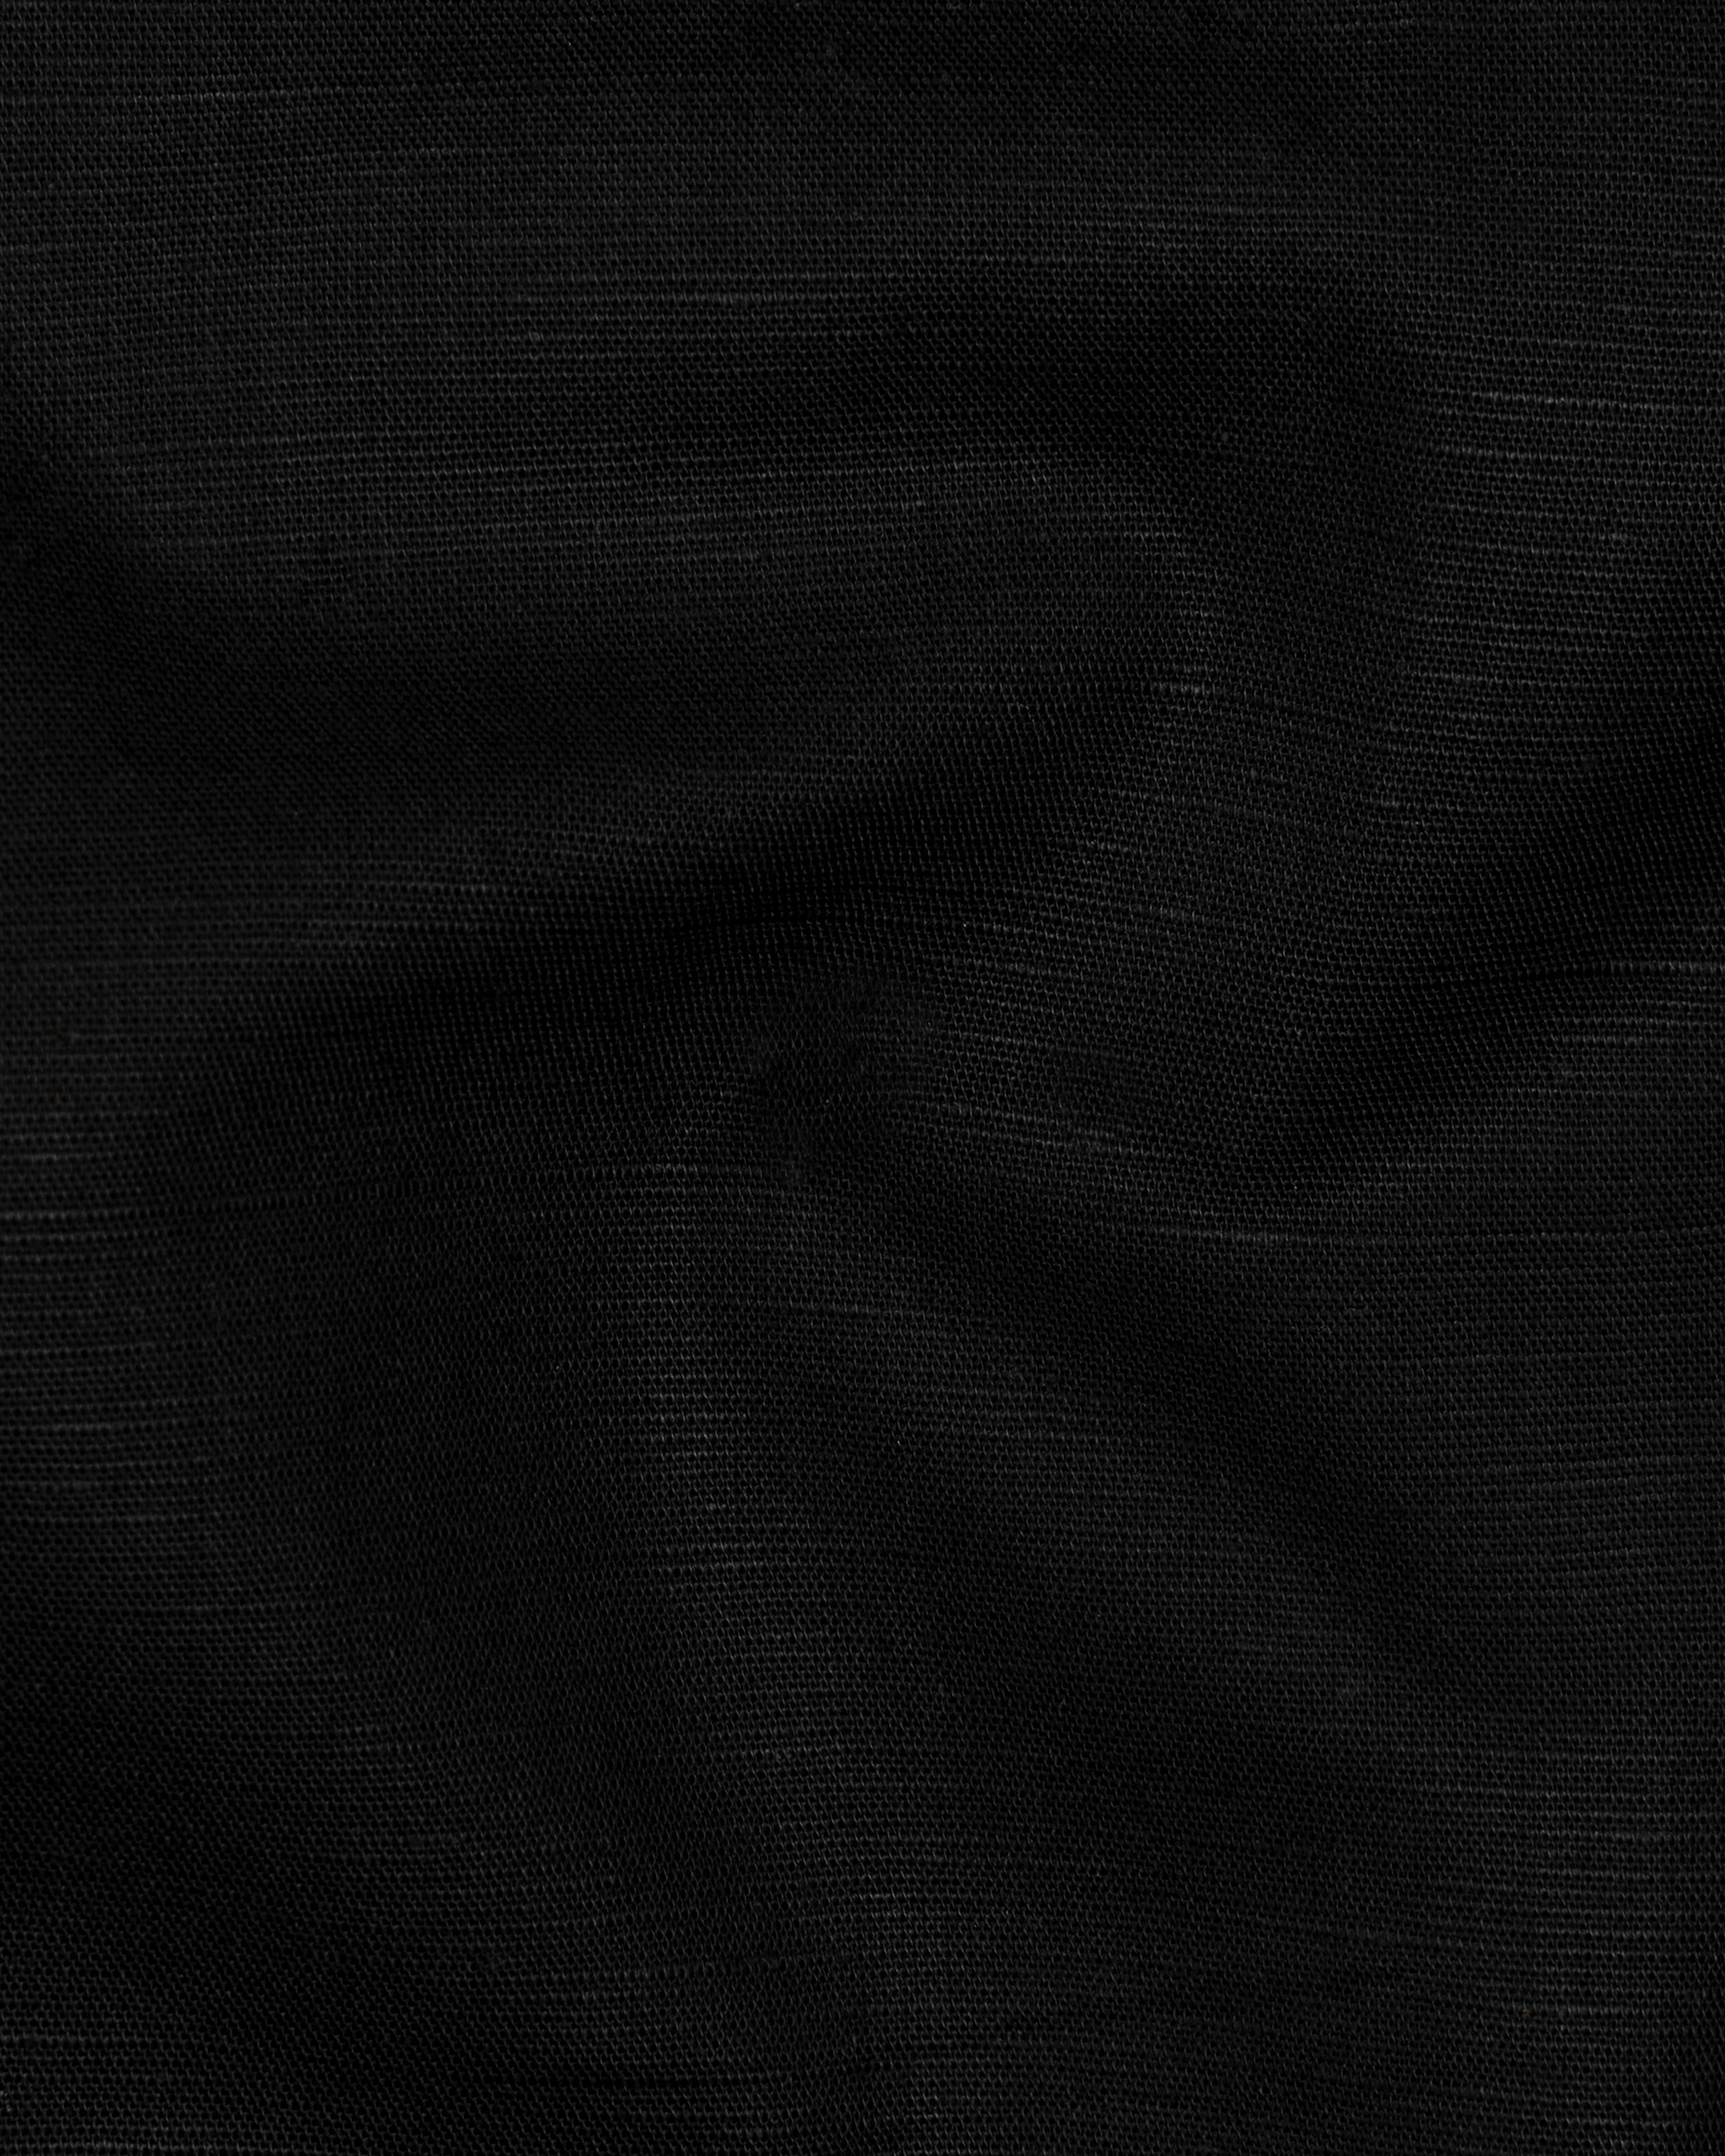 Jade Black Premium Giza Cotton shirt 2866M-BLK-38, 2866M-BLK-H-38, 2866M-BLK-39, 2866M-BLK-H-39, 2866M-BLK-40, 2866M-BLK-H-40, 2866M-BLK-42, 2866M-BLK-H-42, 2866M-BLK-44, 2866M-BLK-H-44, 2866M-BLK-46, 2866M-BLK-H-46, 2866M-BLK-48, 2866M-BLK-H-48, 2866M-BLK-50, 2866M-BLK-H-50, 2866M-BLK-52, 2866M-BLK-H-52